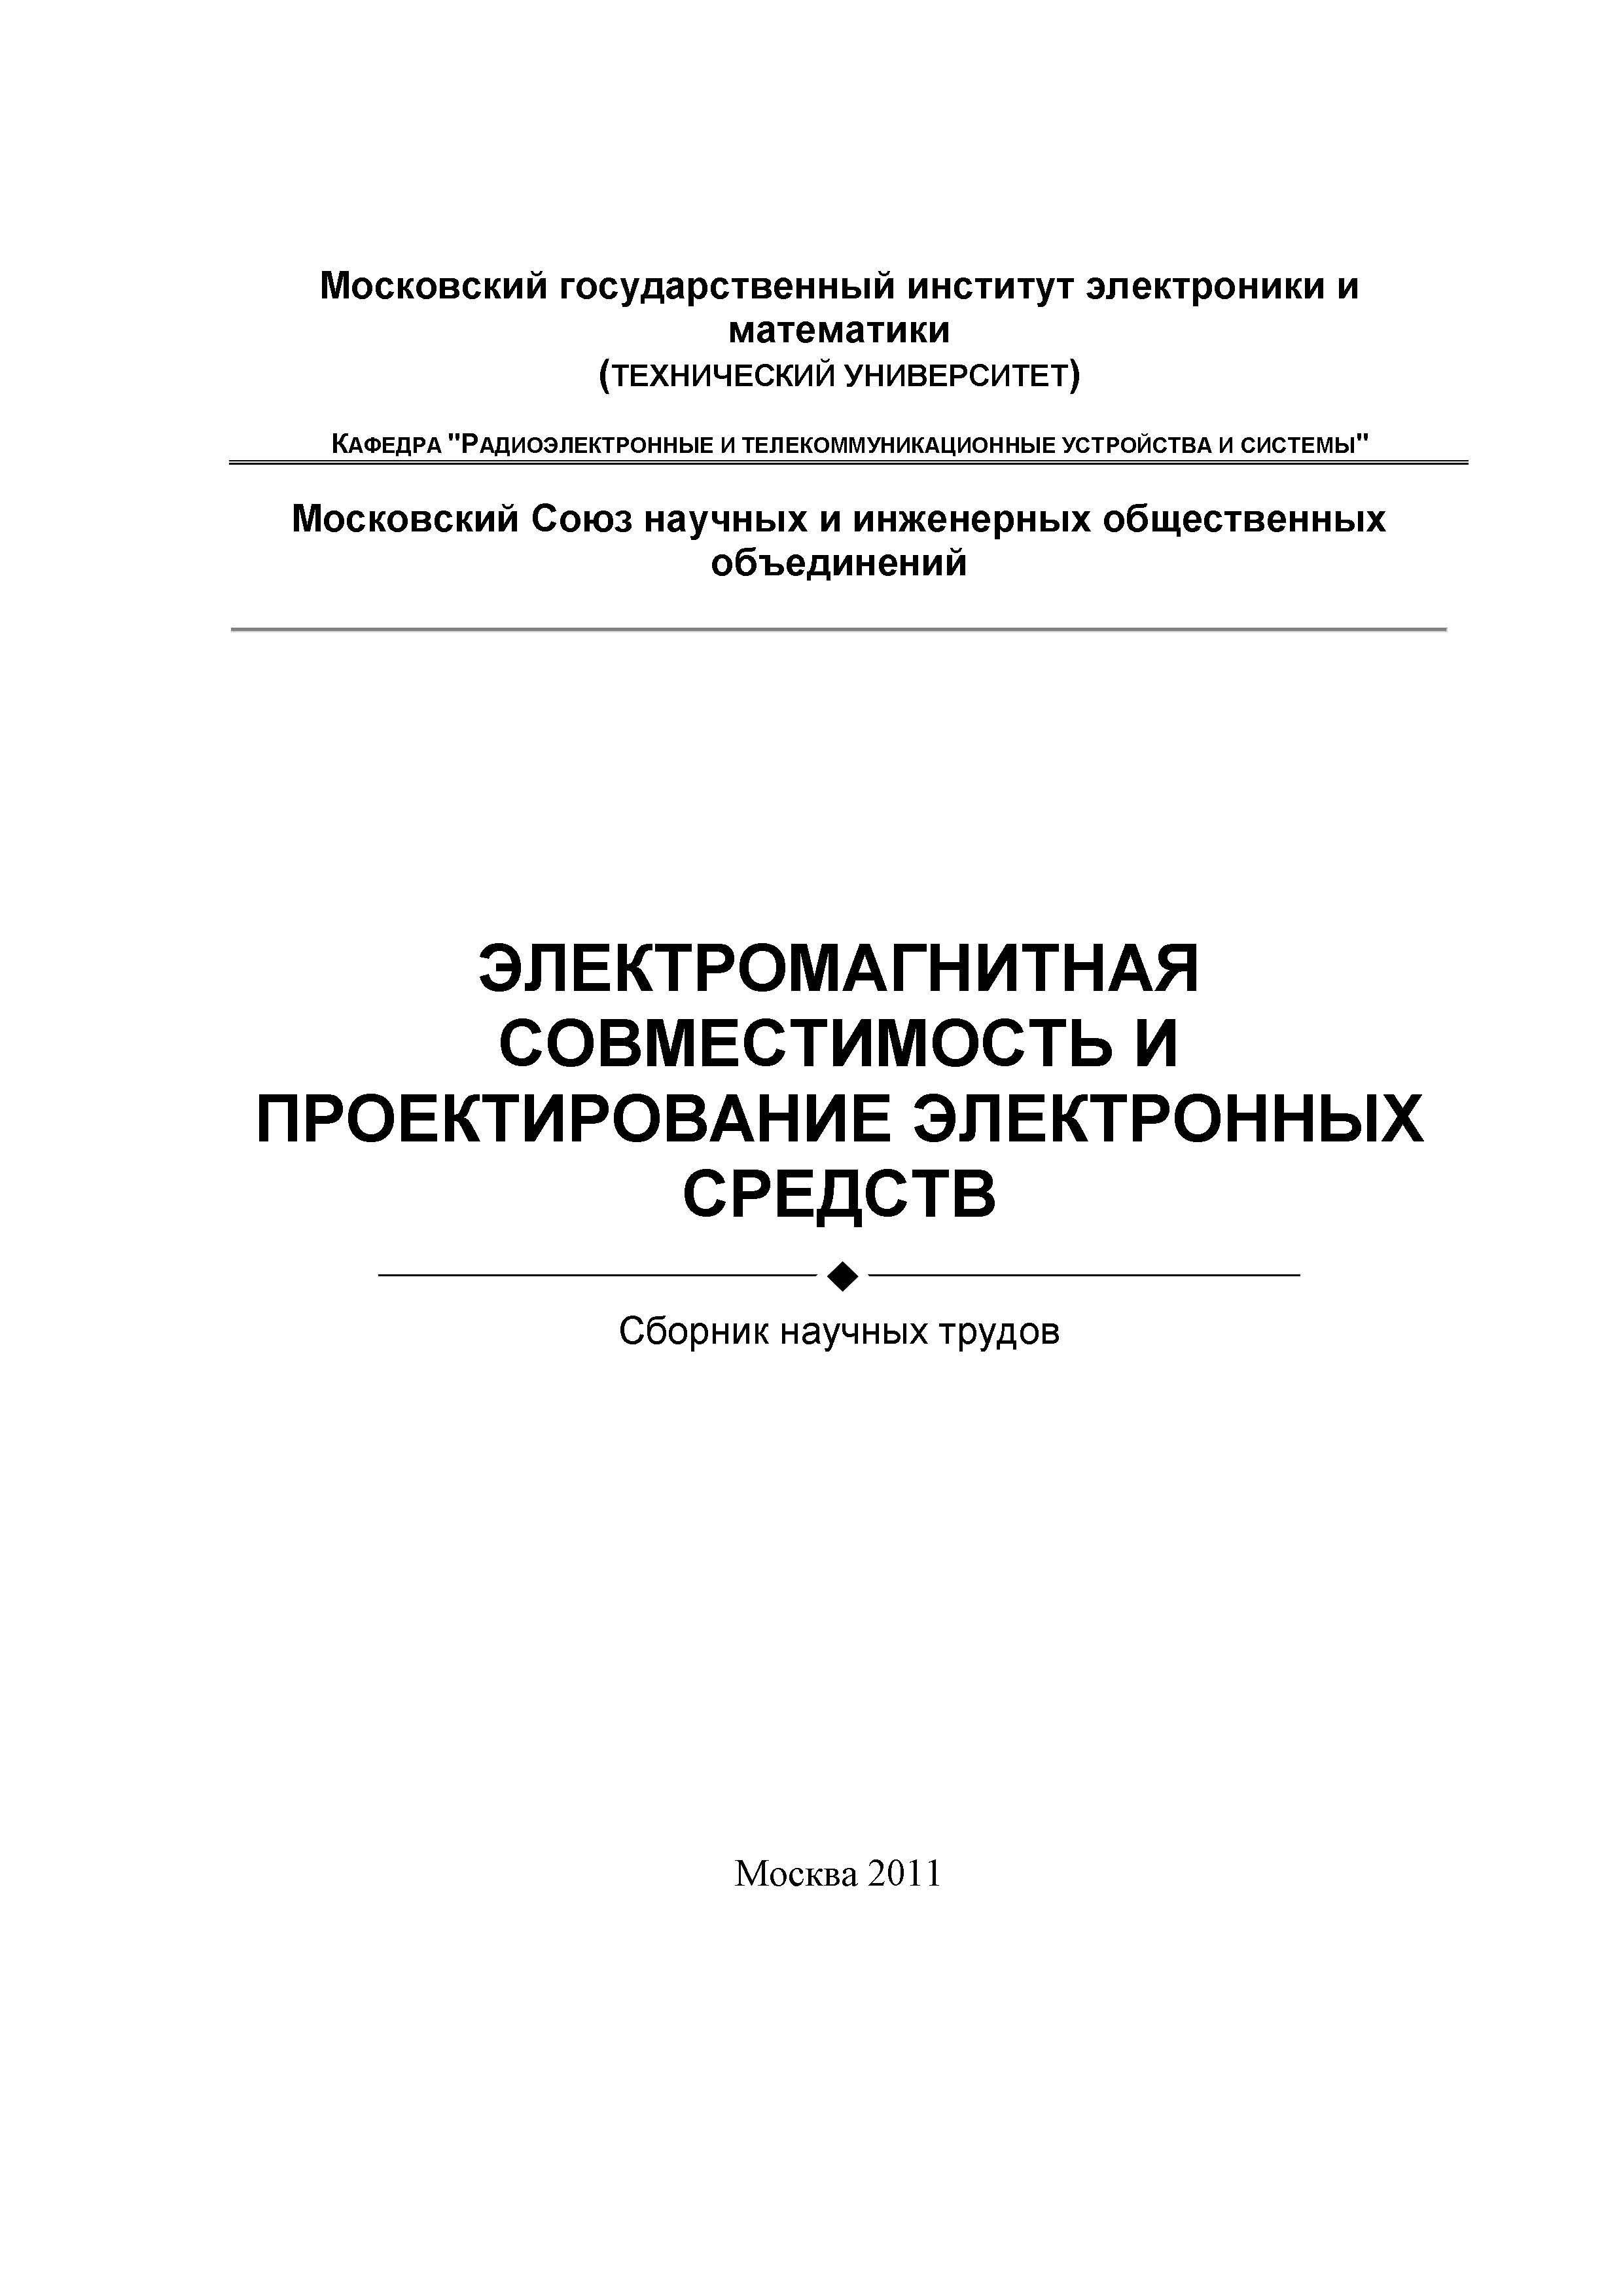 pdf dictionary